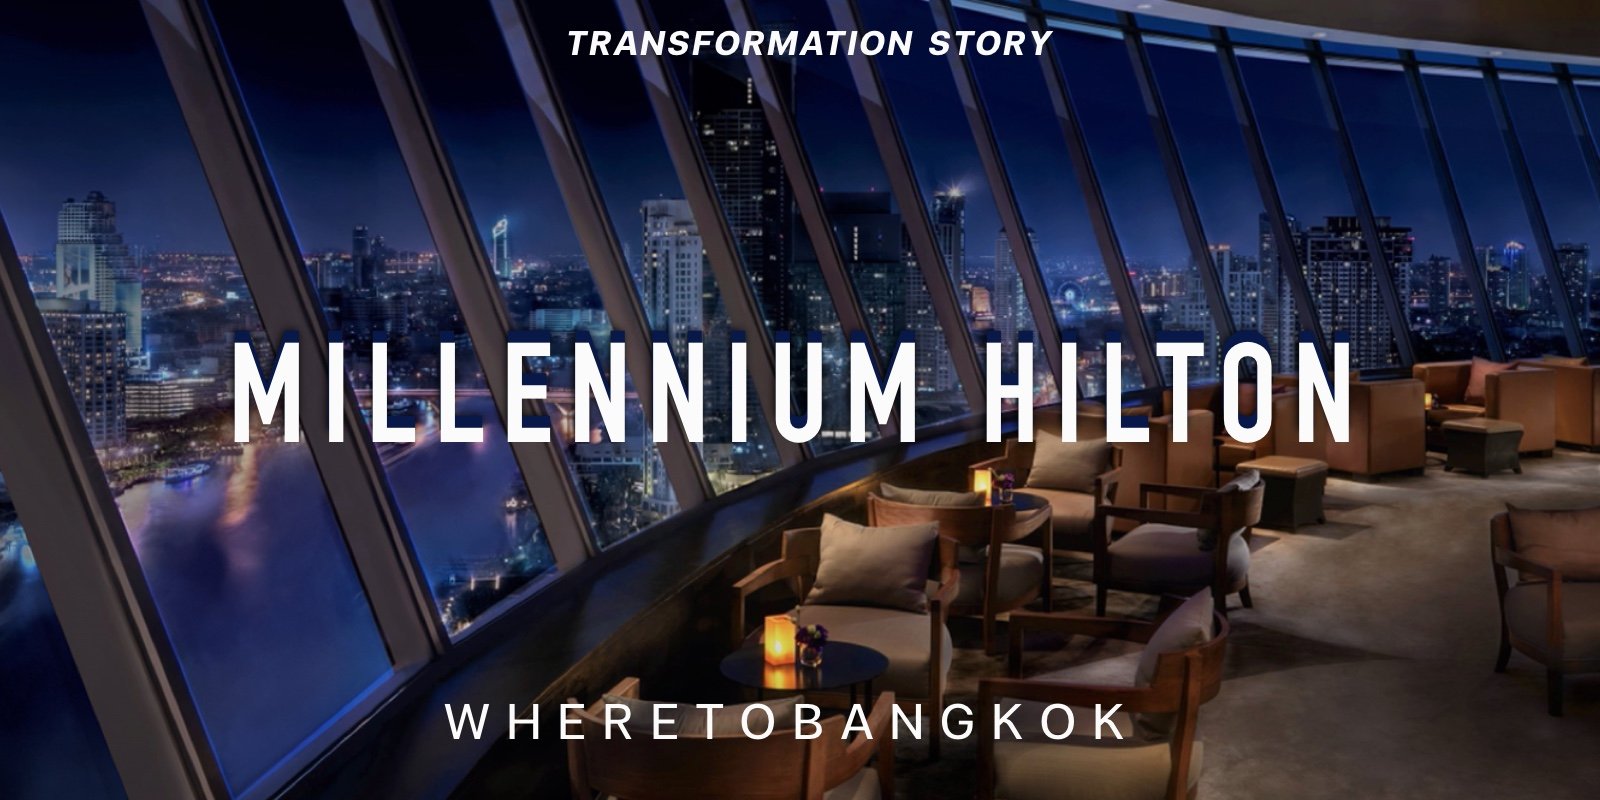 รีวิว Millennium Hilton Bangkok พักผ่อนกลางกรุงโรงแรม 5 ดาว วิวแม่น้ำเจ้าพระยา